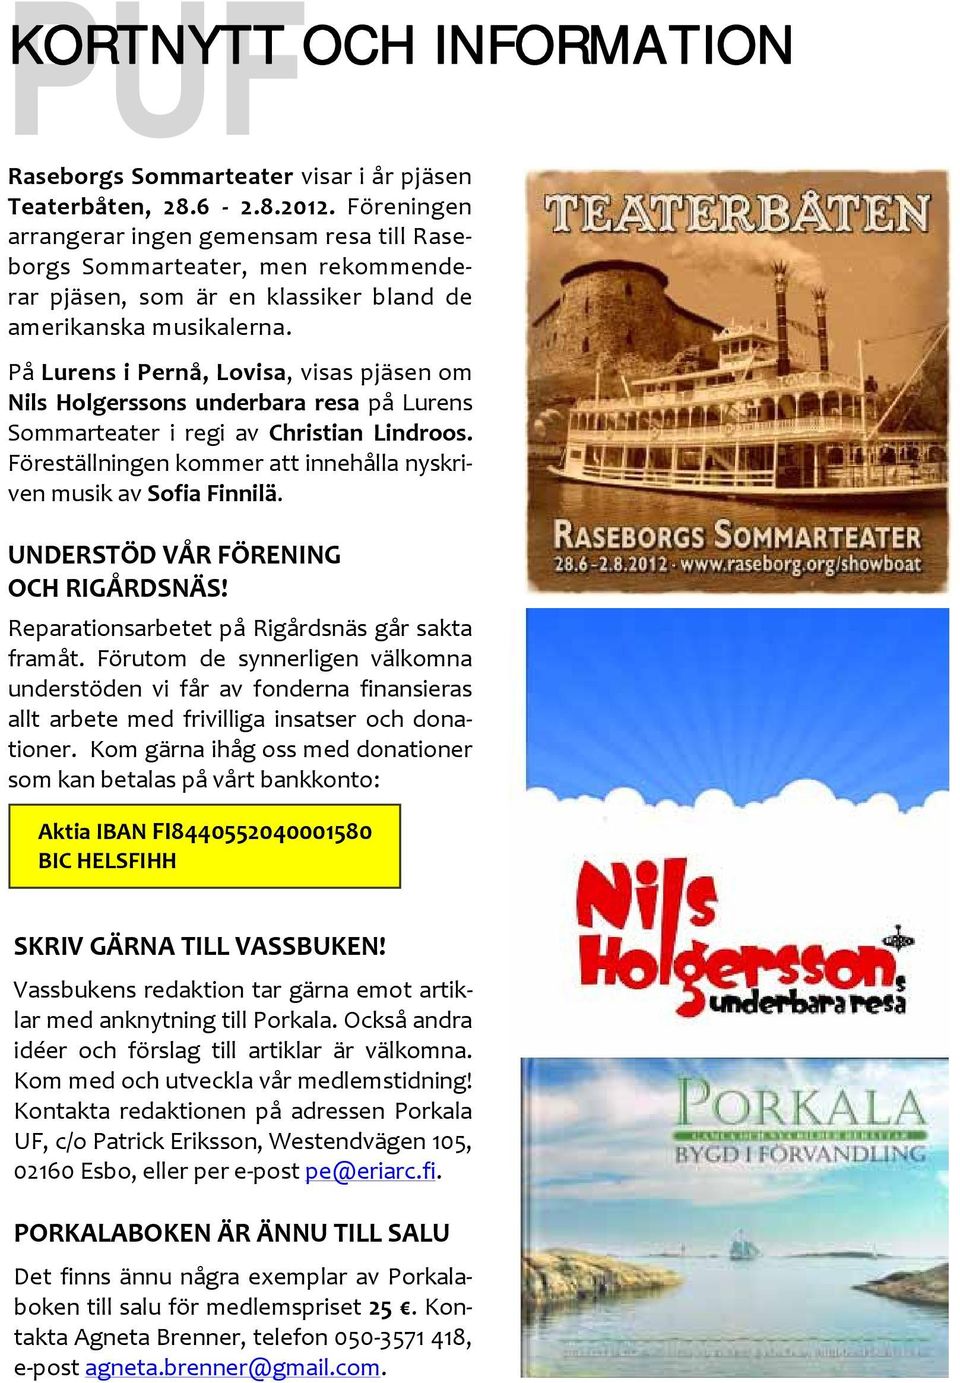 På Lurens i Pernå, Lovisa, visas pjäsen om Nils Holgerssons underbara resa på Lurens Sommarteater i regi av Christian Lindroos. Föreställningen kommer att innehålla nyskriven musik av Sofia Finnilä.